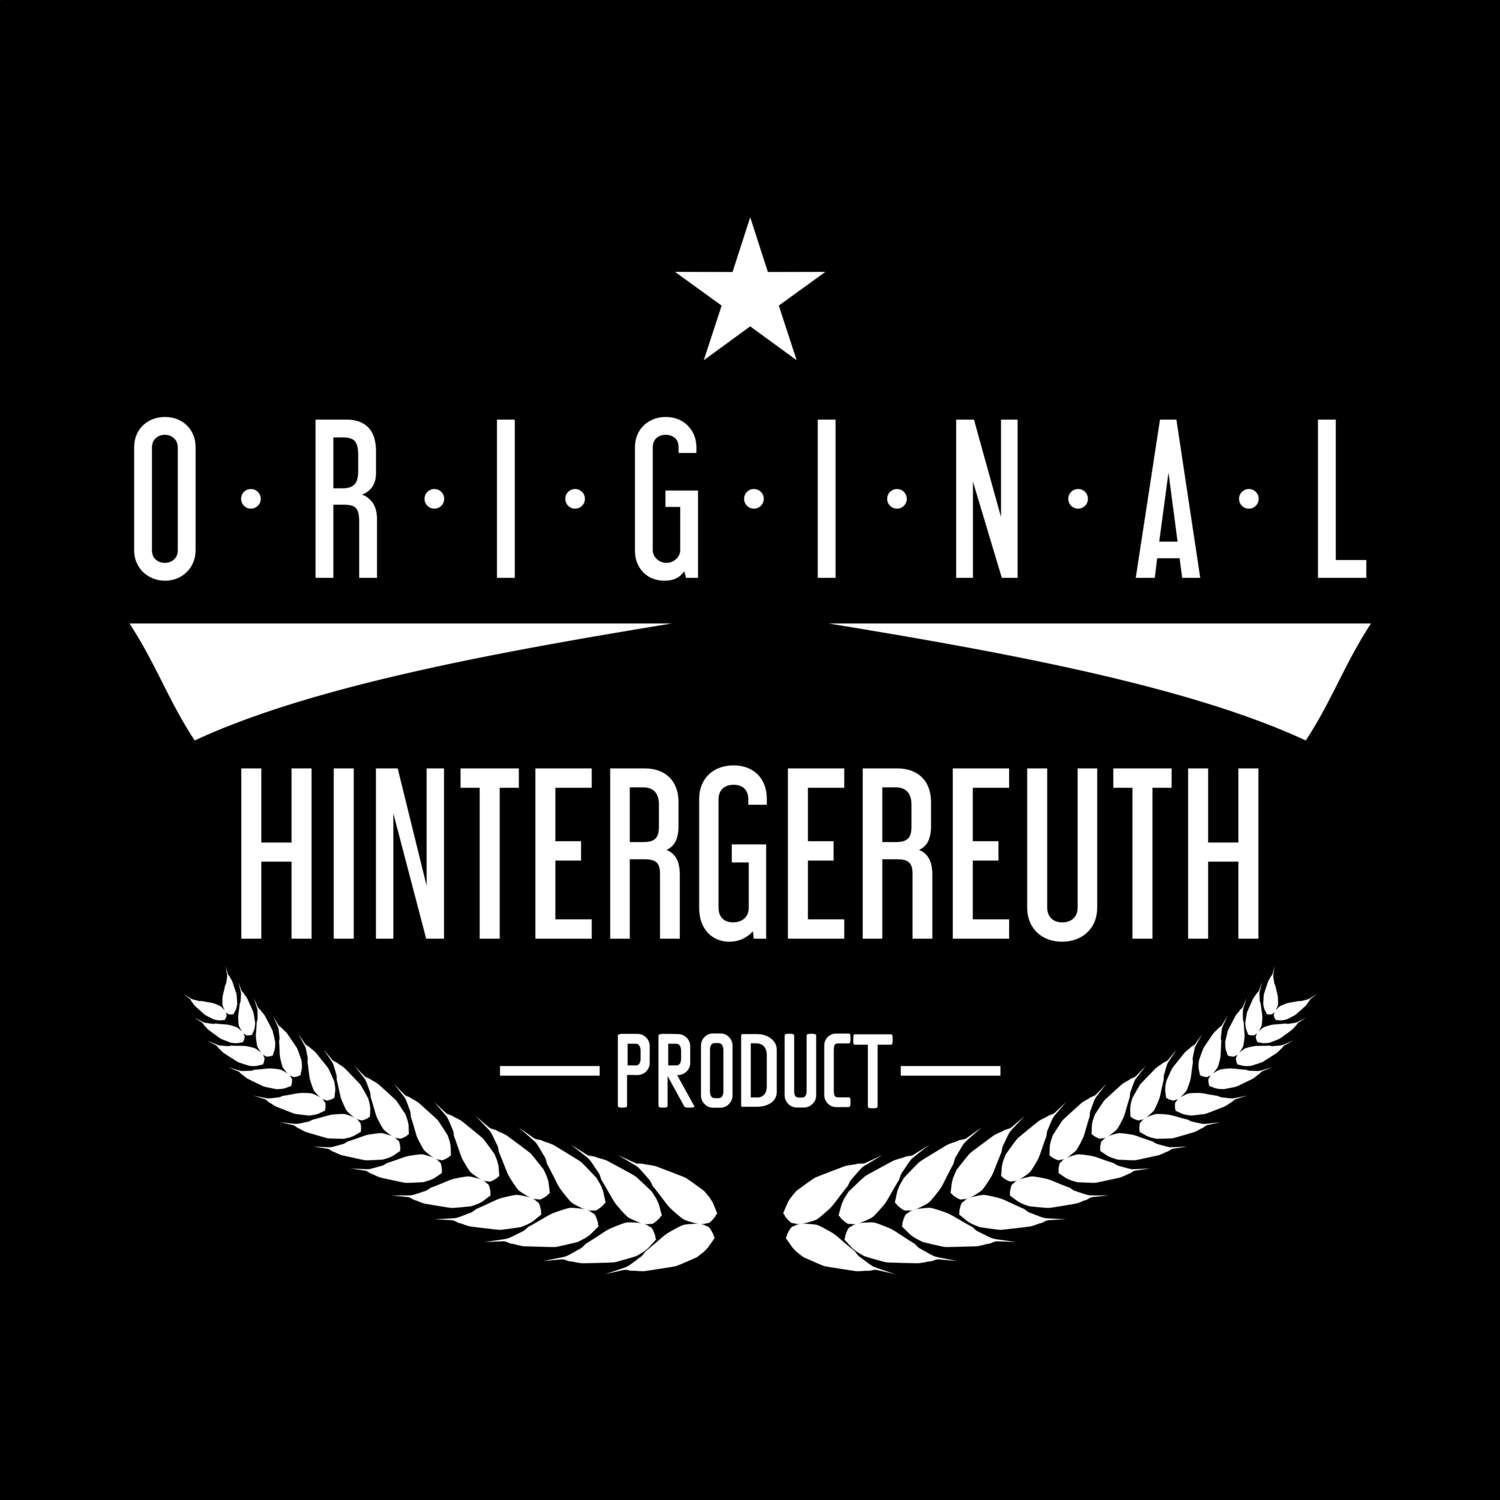 Hintergereuth T-Shirt »Original Product«